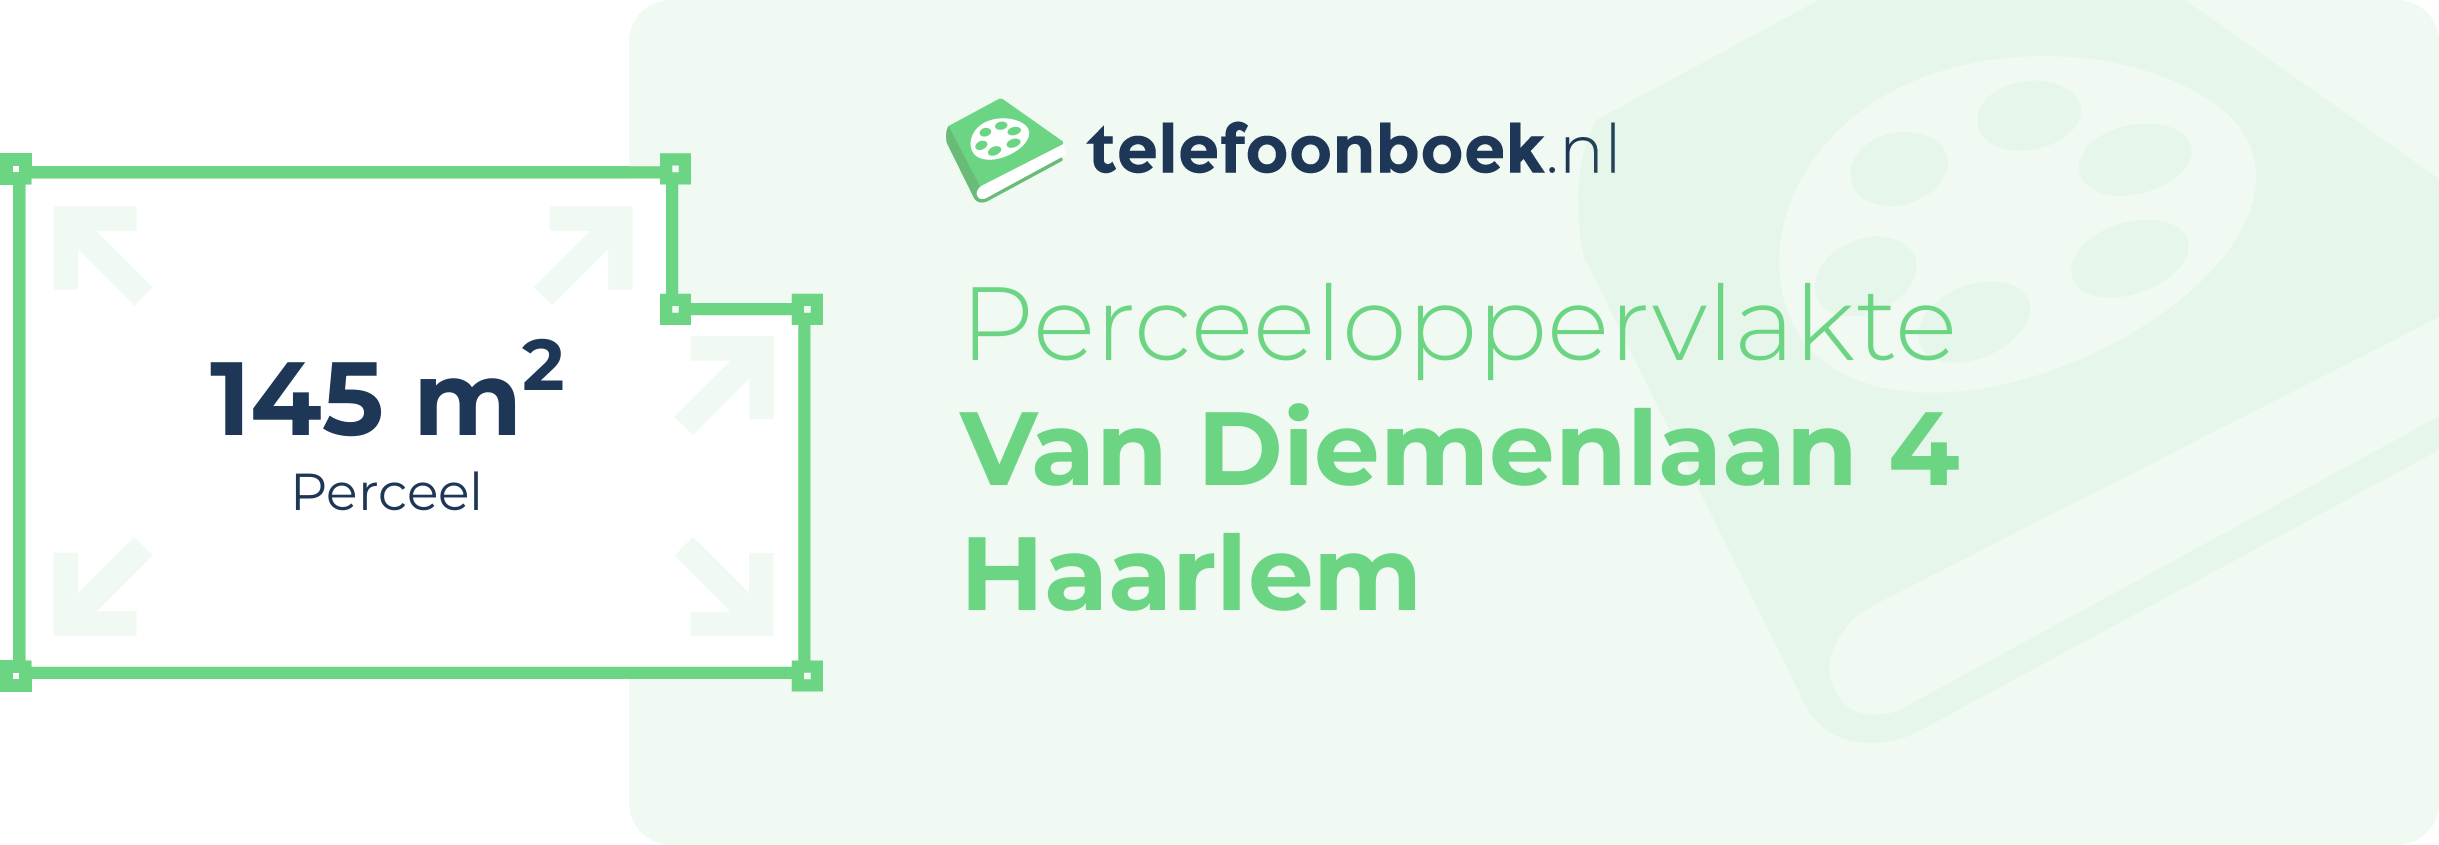 Perceeloppervlakte Van Diemenlaan 4 Haarlem